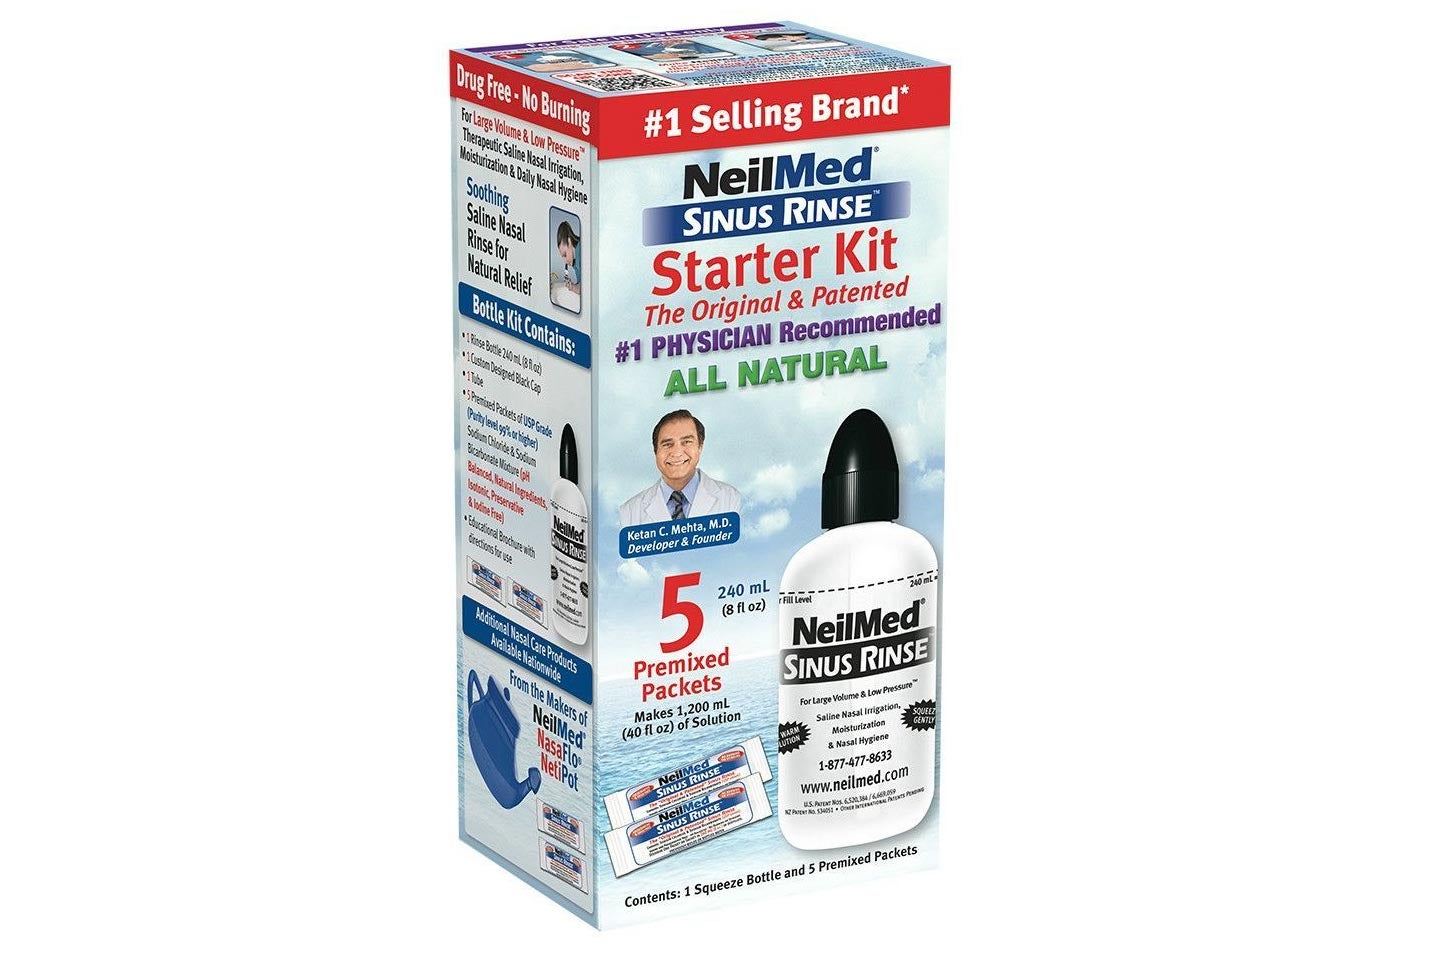 NeilMed Sinus Rinse Starter Kit box.